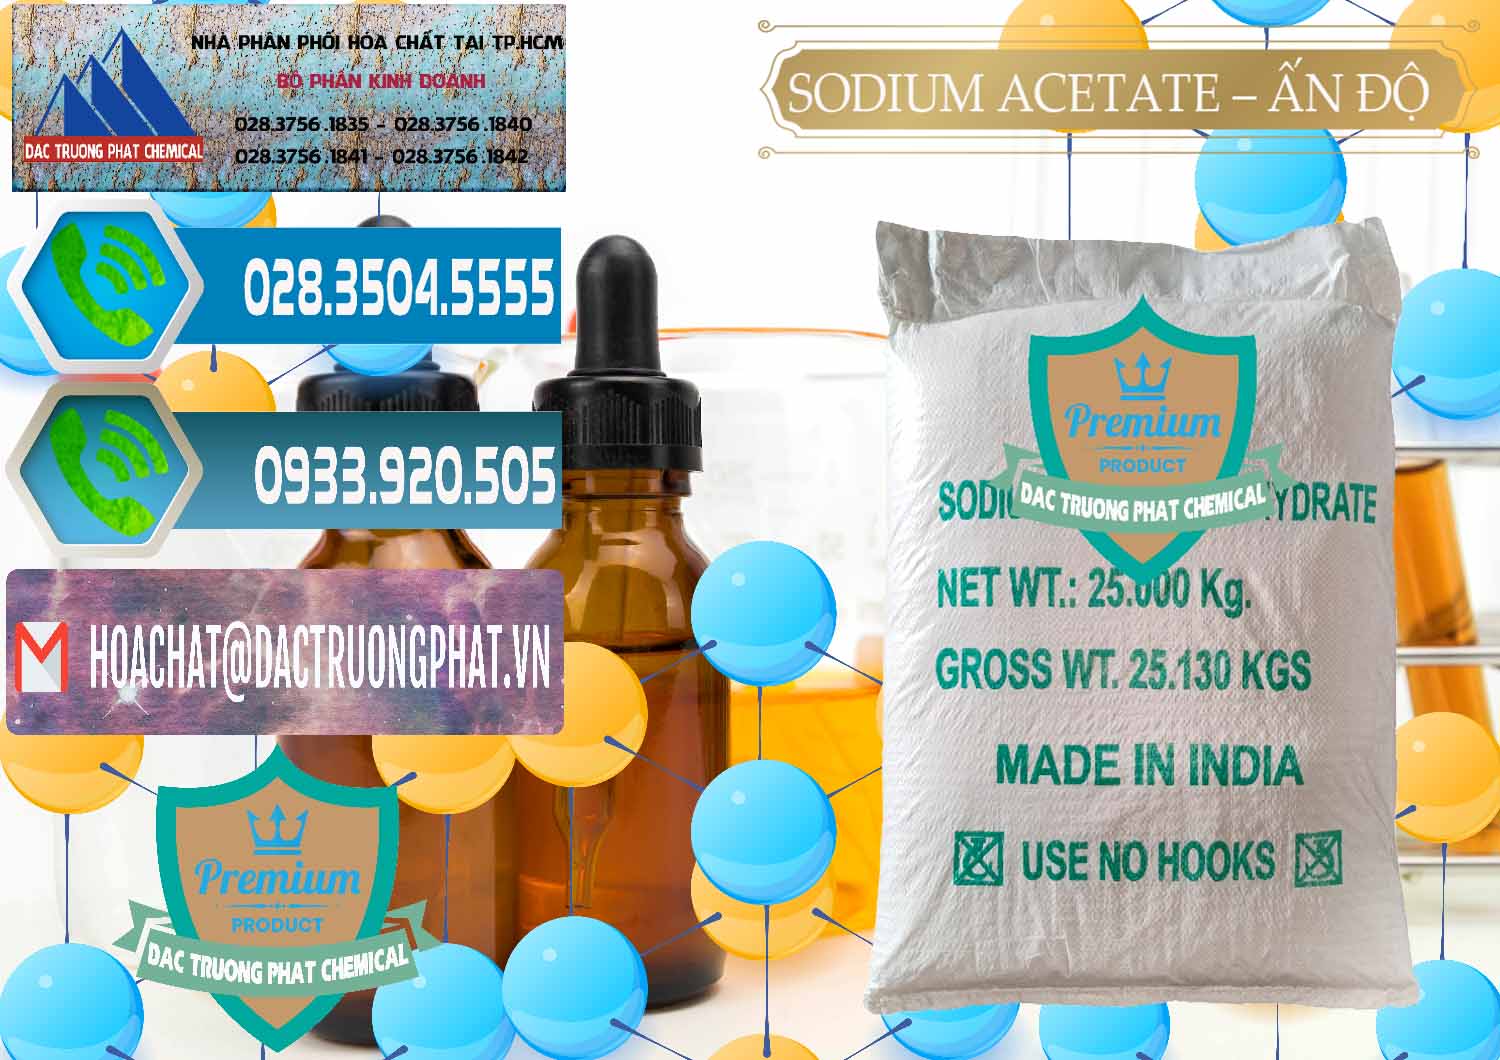 Công ty chuyên cung cấp & bán Sodium Acetate - Natri Acetate Ấn Độ India - 0133 - Công ty cung cấp và bán hóa chất tại TP.HCM - congtyhoachat.net